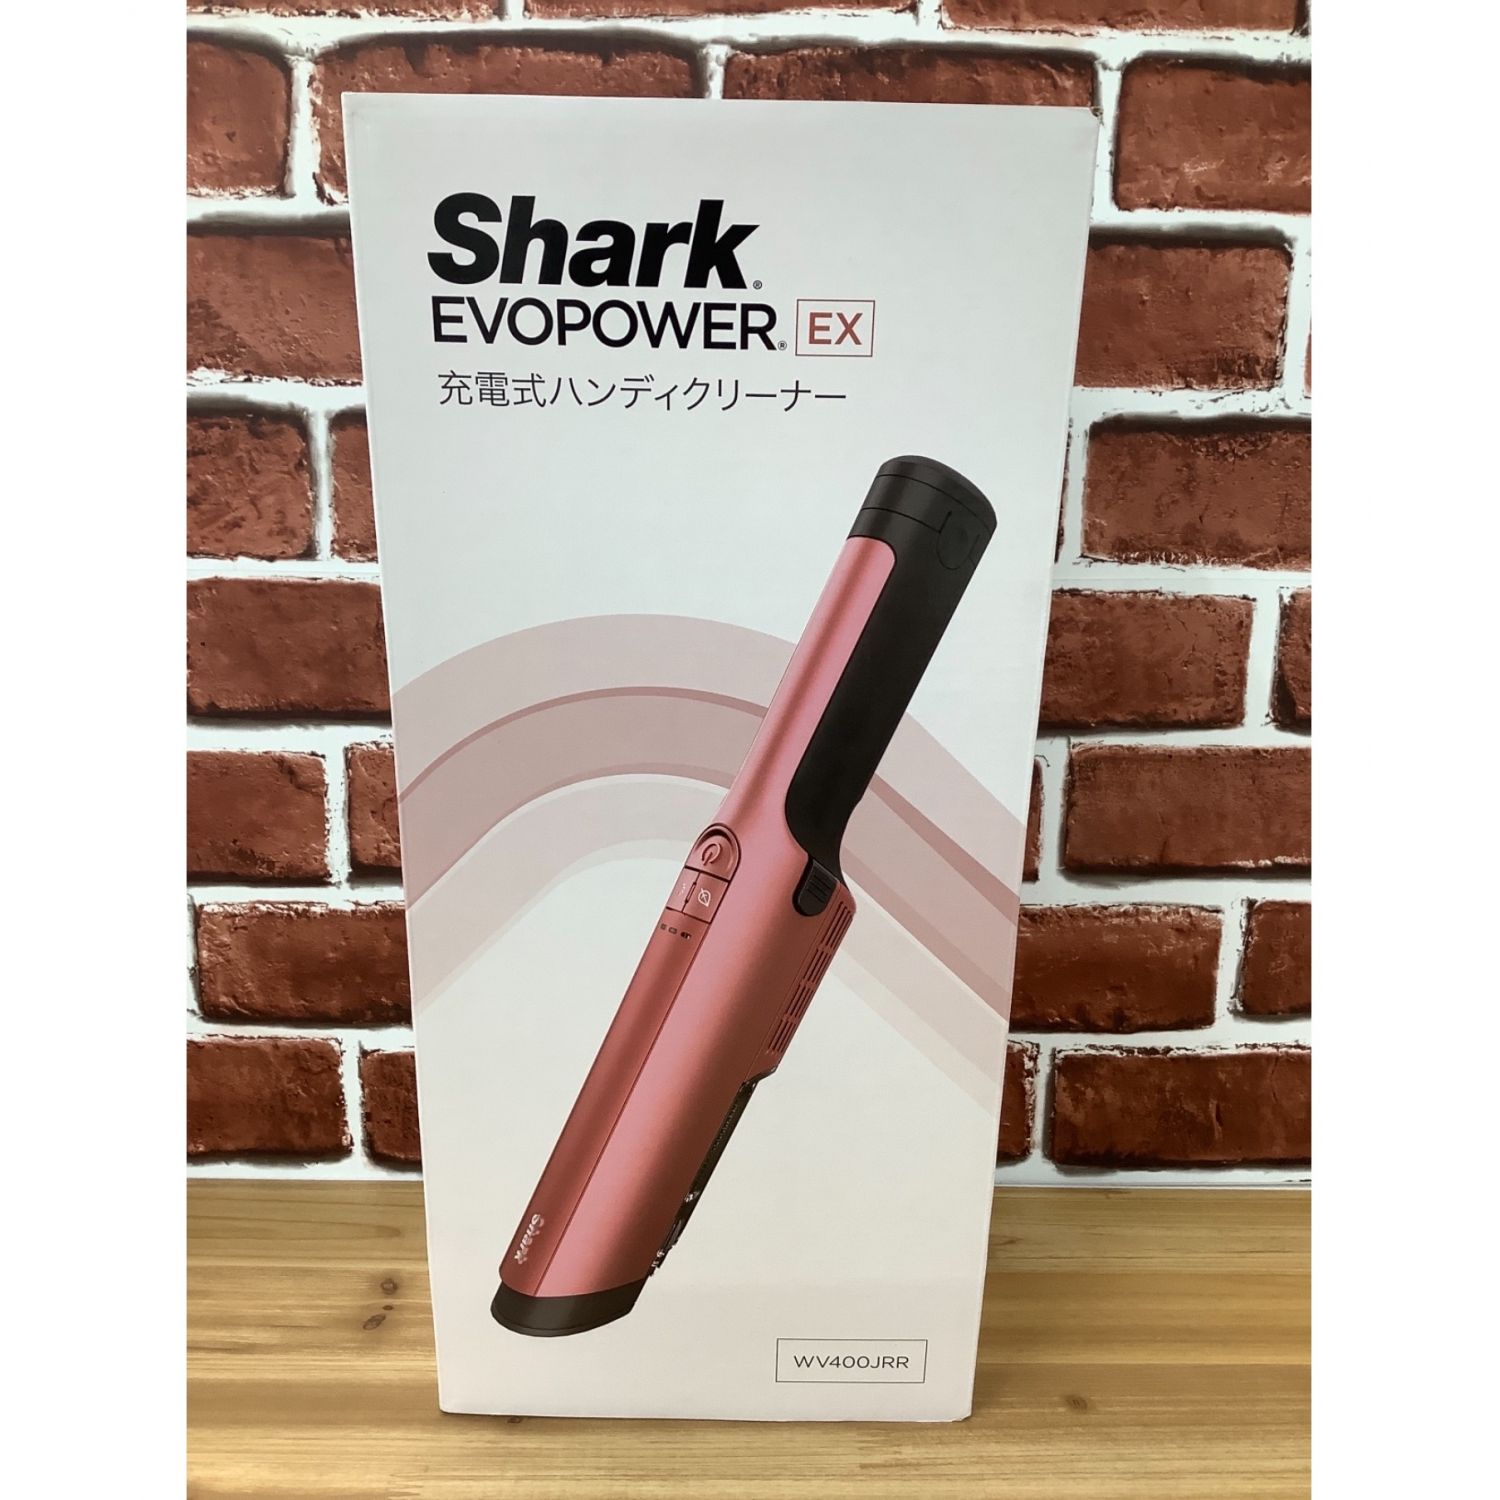 商品説明Shark EVOPOWER EX 充電式ハンディクリーナー WV400JRR - 掃除